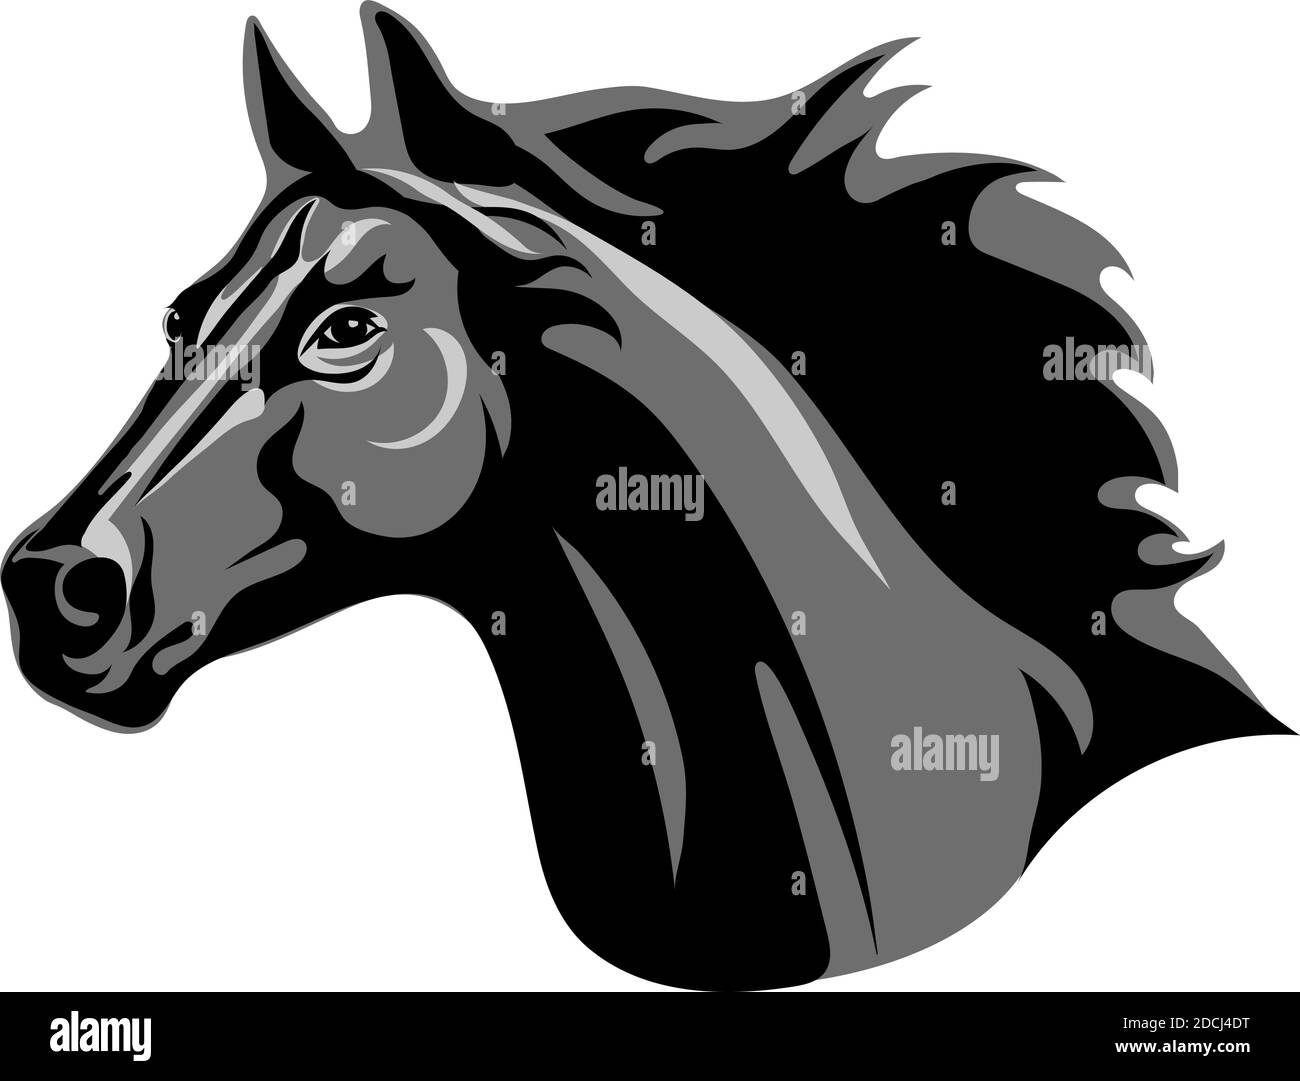 Pferd, Porträt, weiß, schwarz, grau, Schattierungen Stock Vektor